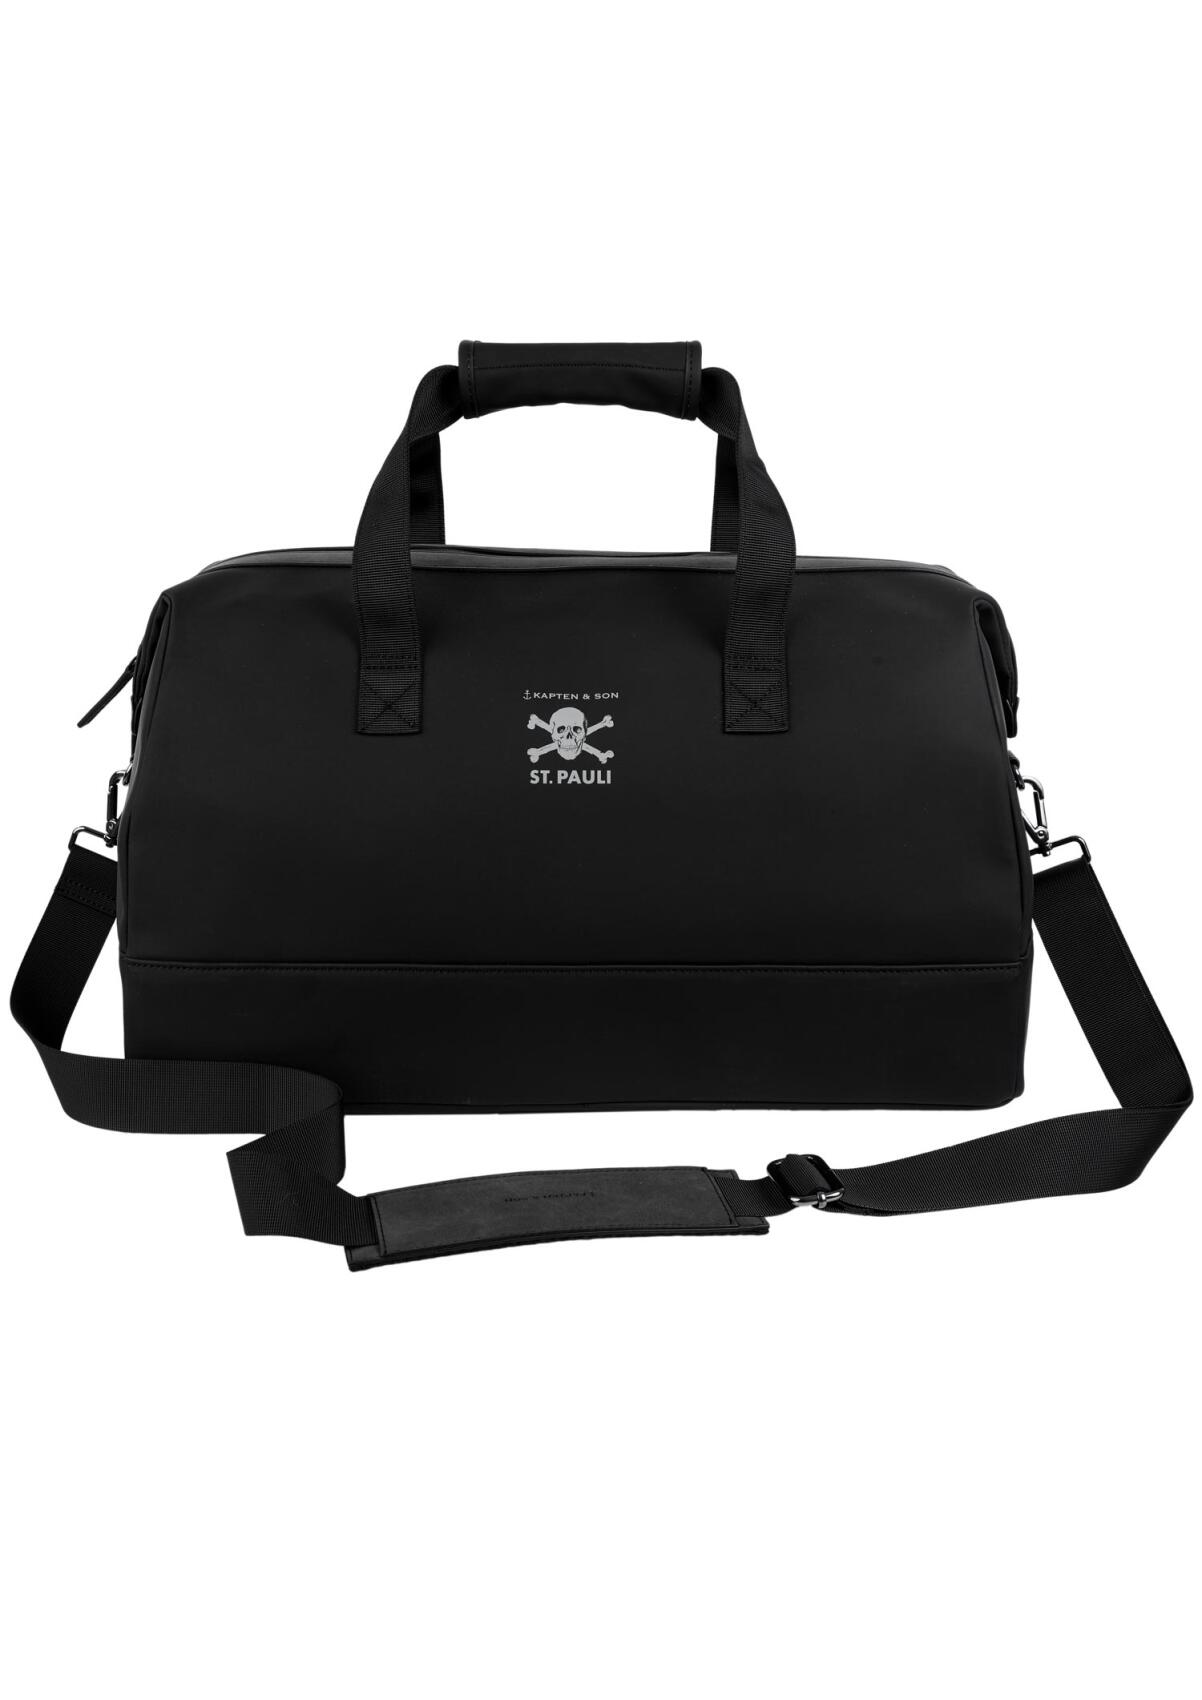 FCSP x Kapten & Son - Travel bag